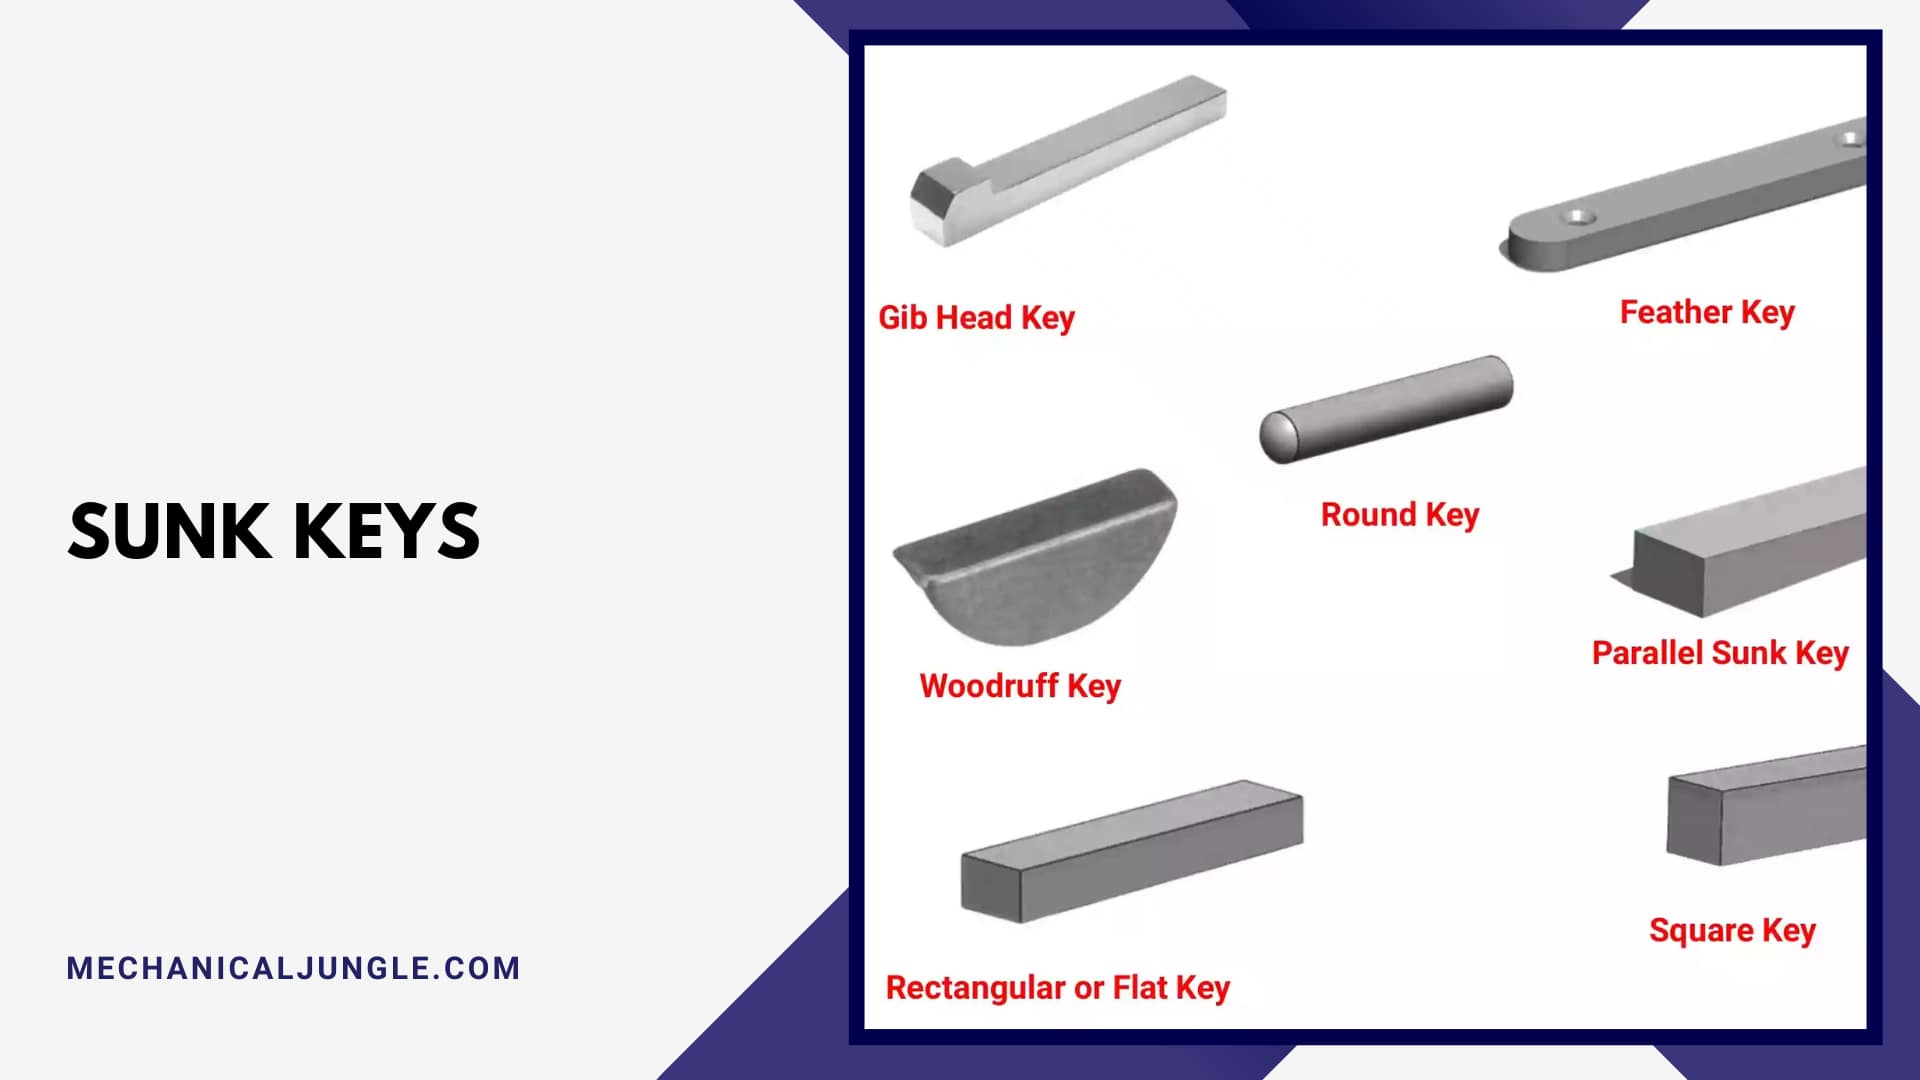 Advantages of Woodruff Key